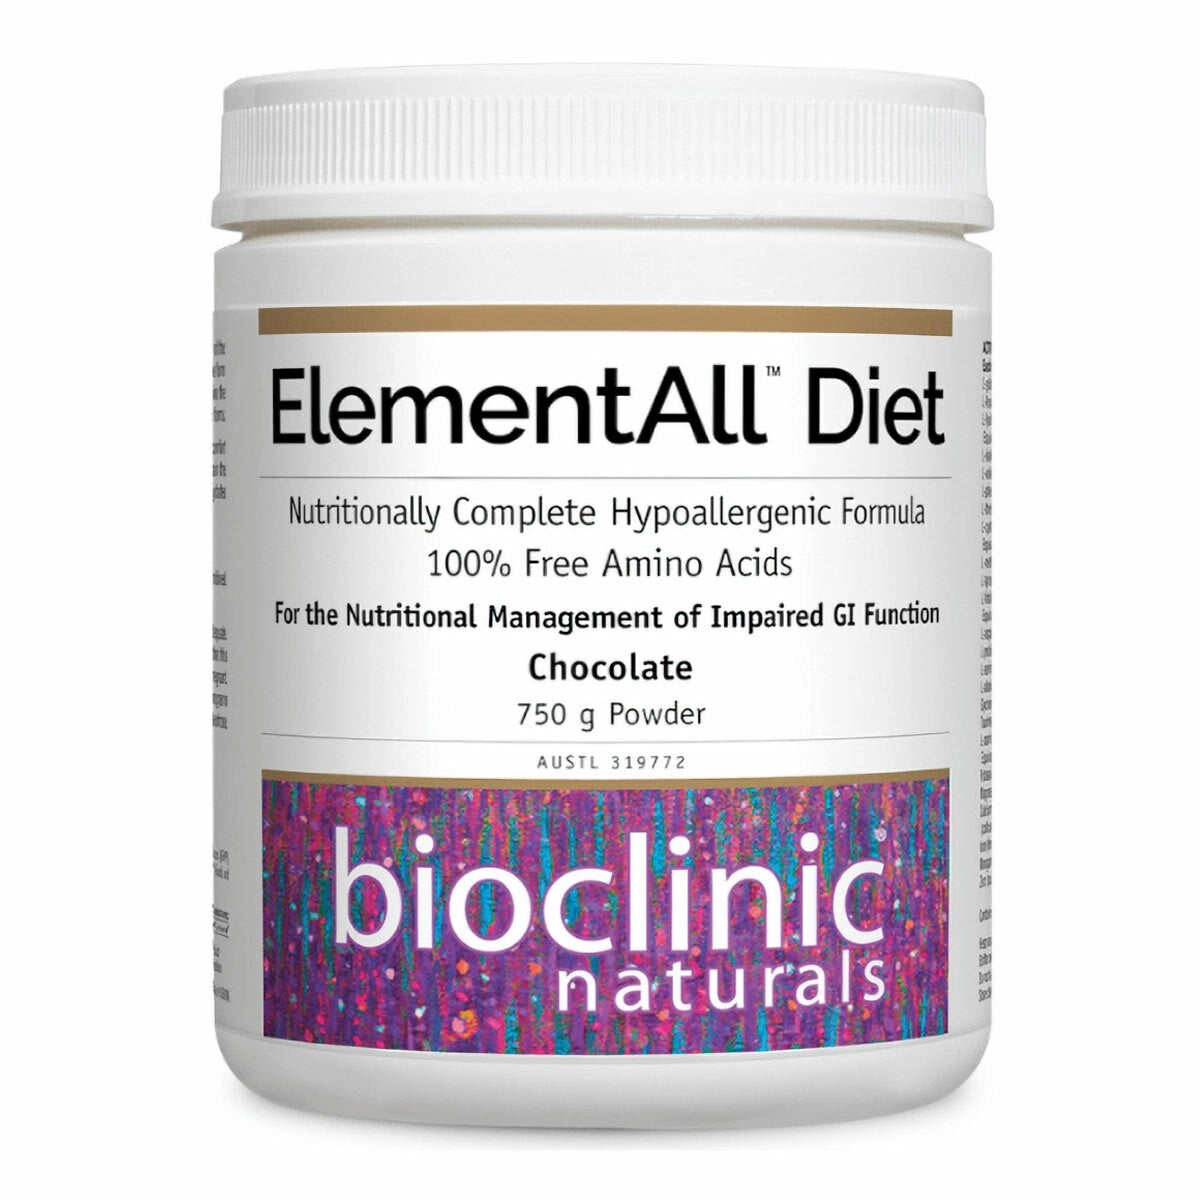 Bioclinic Naturals – ElementAll Diet Chocolate 750 g